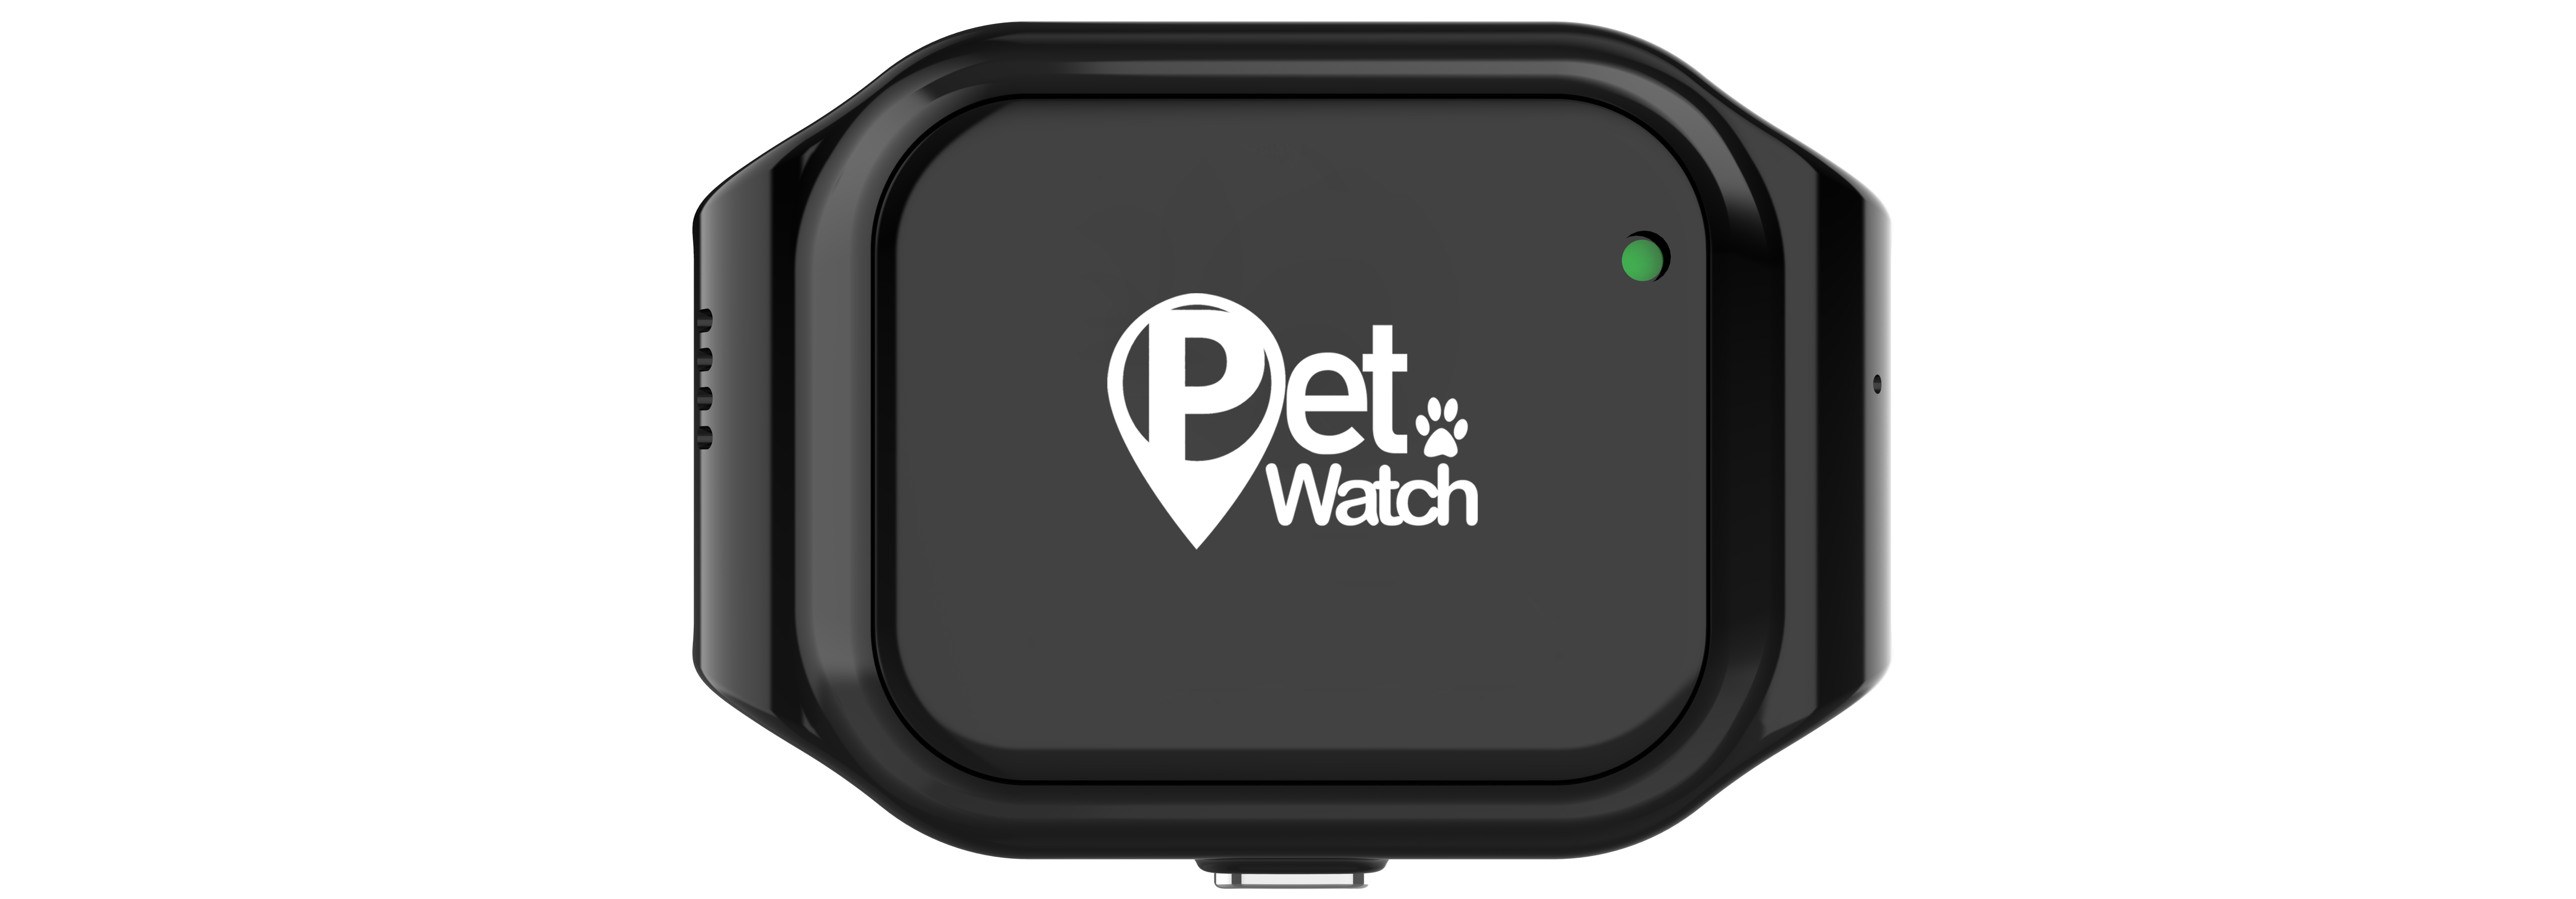 שעון לאיתור חיות מחמד Pet Watch 2.0 - צבע שחור שנה אחריות ע"י היבואן הרשמי